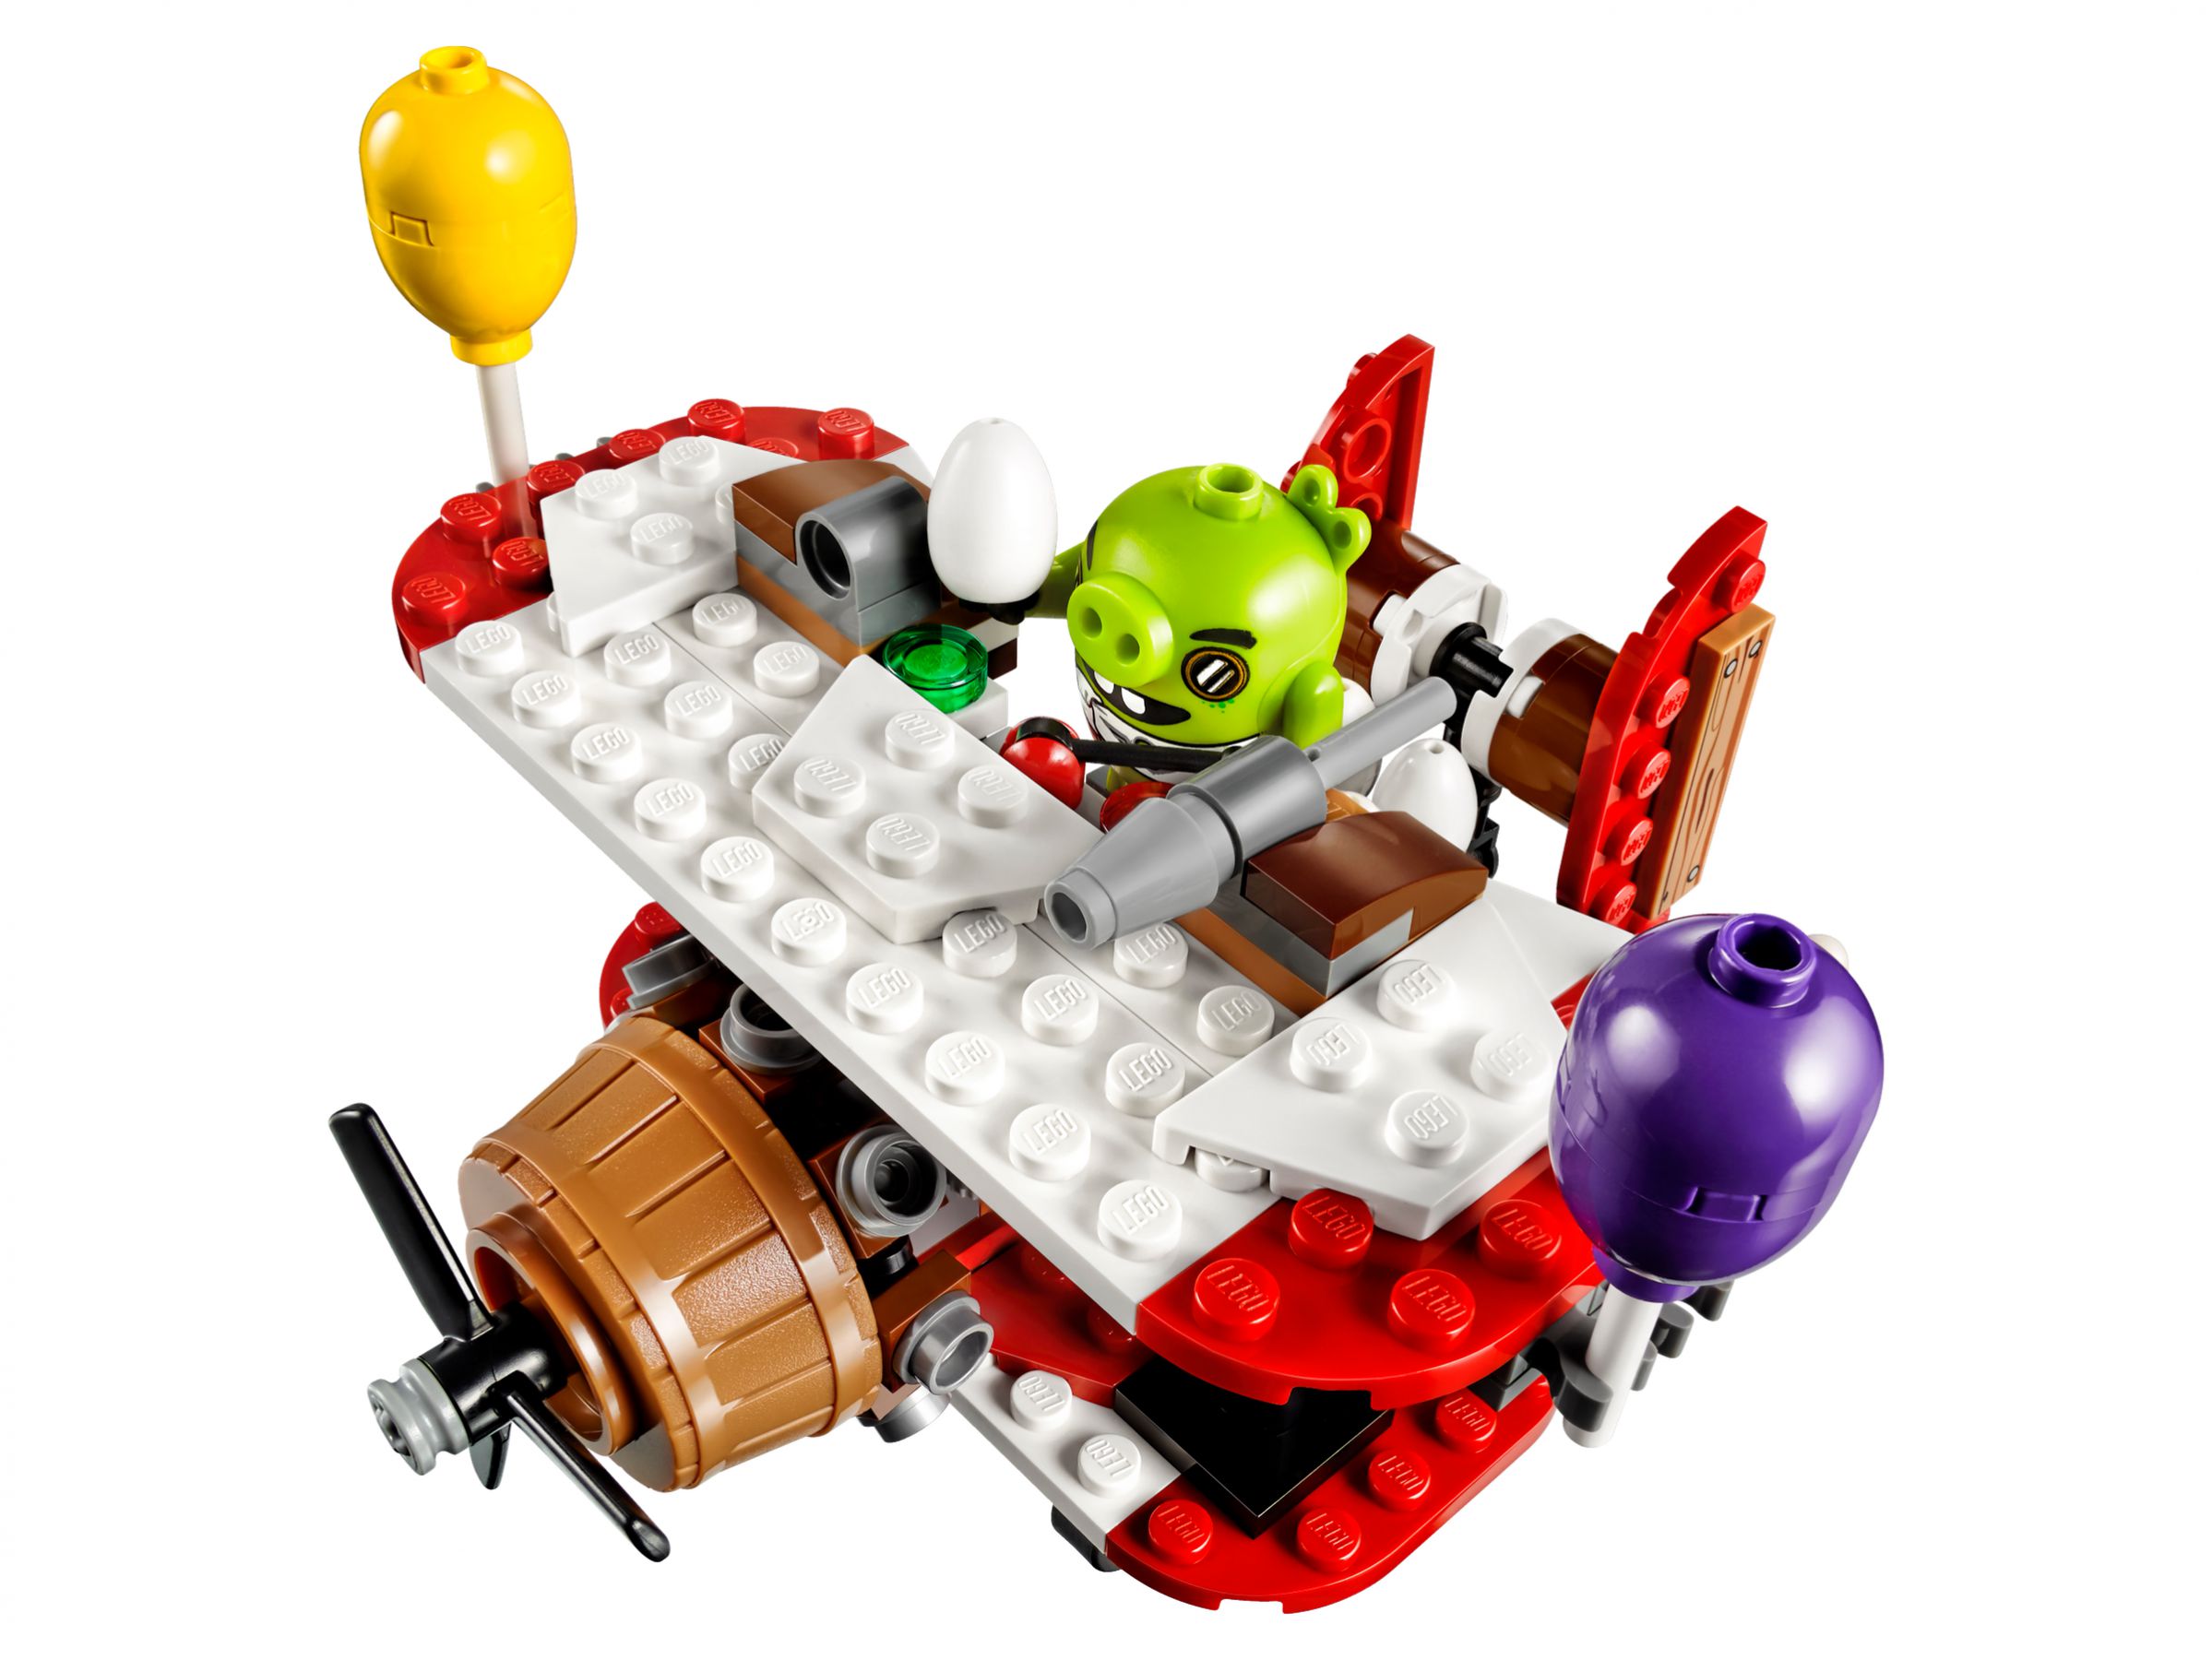 LEGO Angry Birds 75822 Piggy Plane Attack LEGO_75822_alt2.jpg